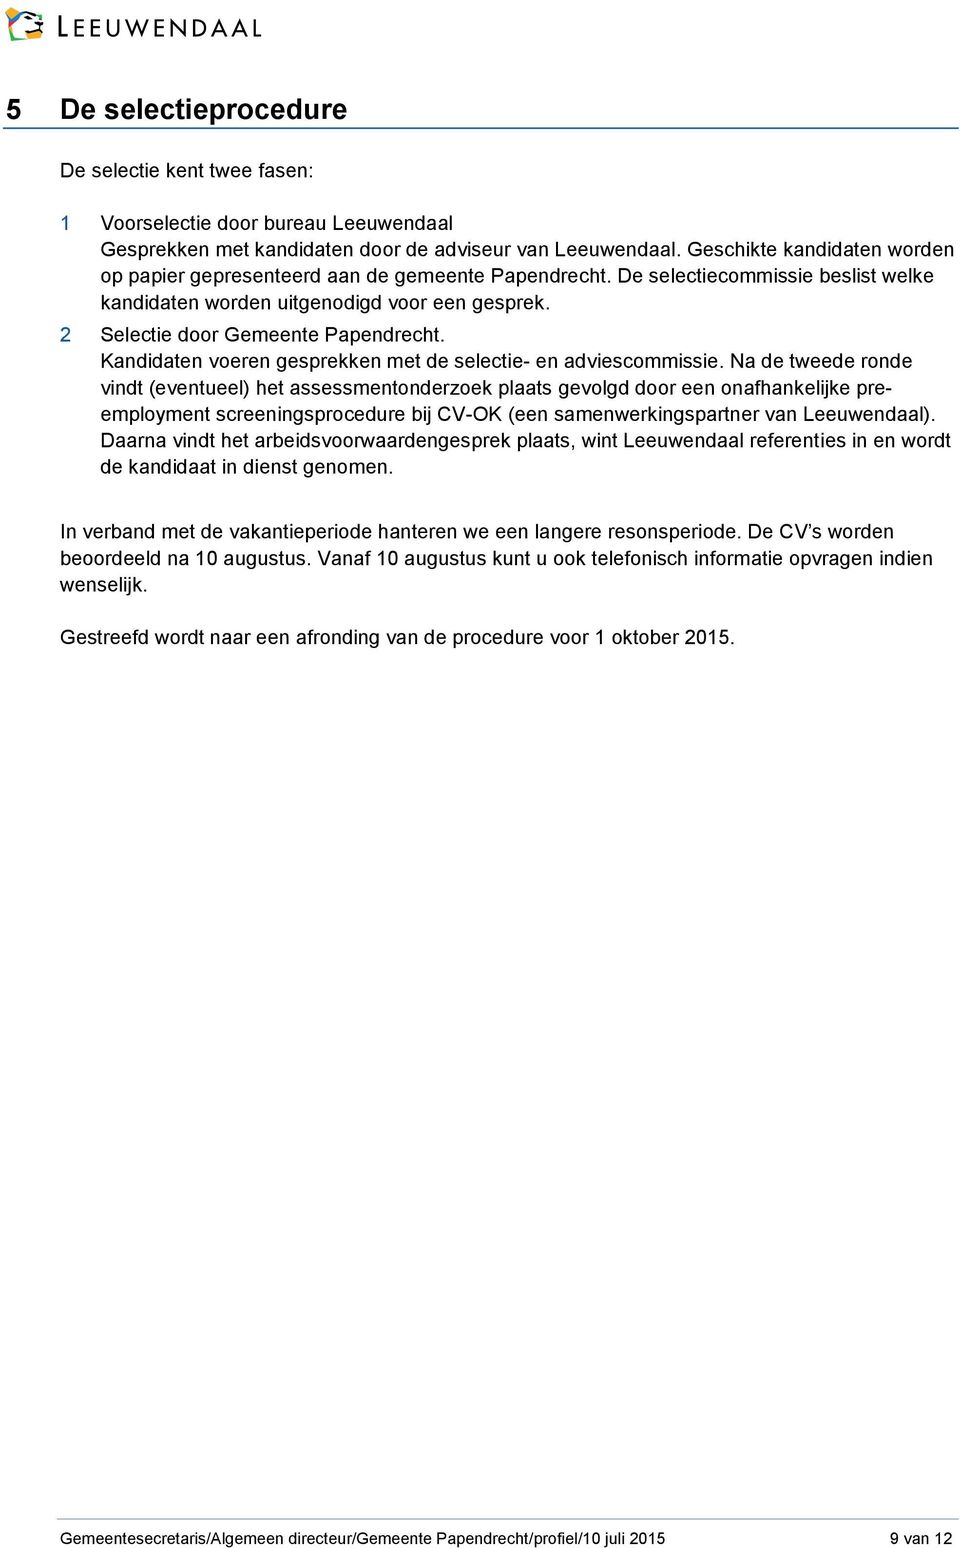 2 Selectie door Gemeente Papendrecht. Kandidaten voeren gesprekken met de selectie- en adviescommissie.